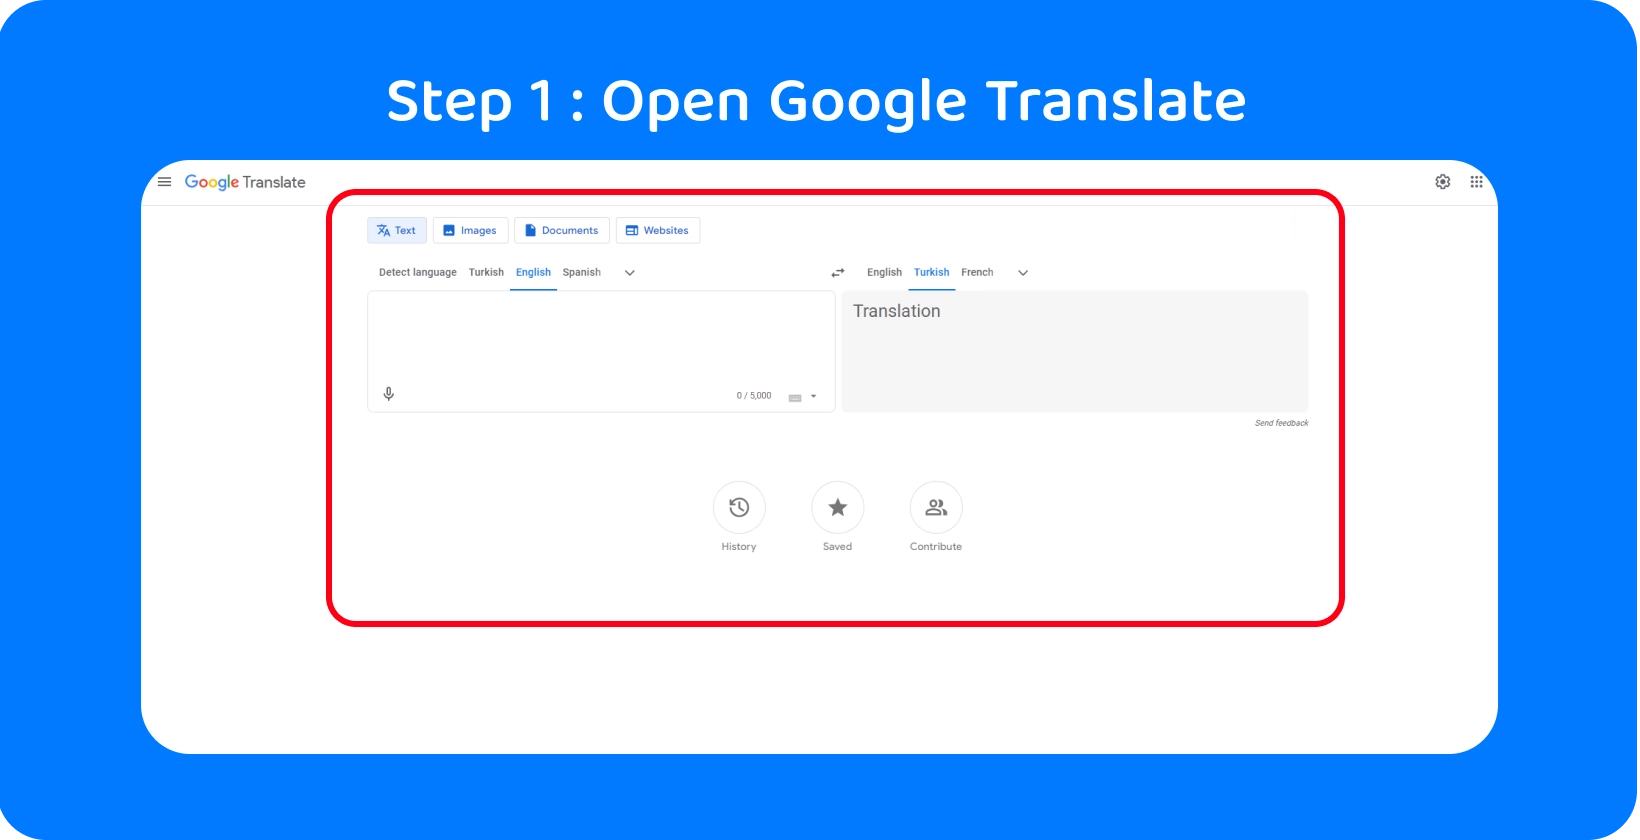 Google Μετάφραση διεπαφής έτοιμη να μετατρέψει προφορικές λέξεις σε κείμενο, απεικονίζοντας το βήμα 1 στη διαδικασία.